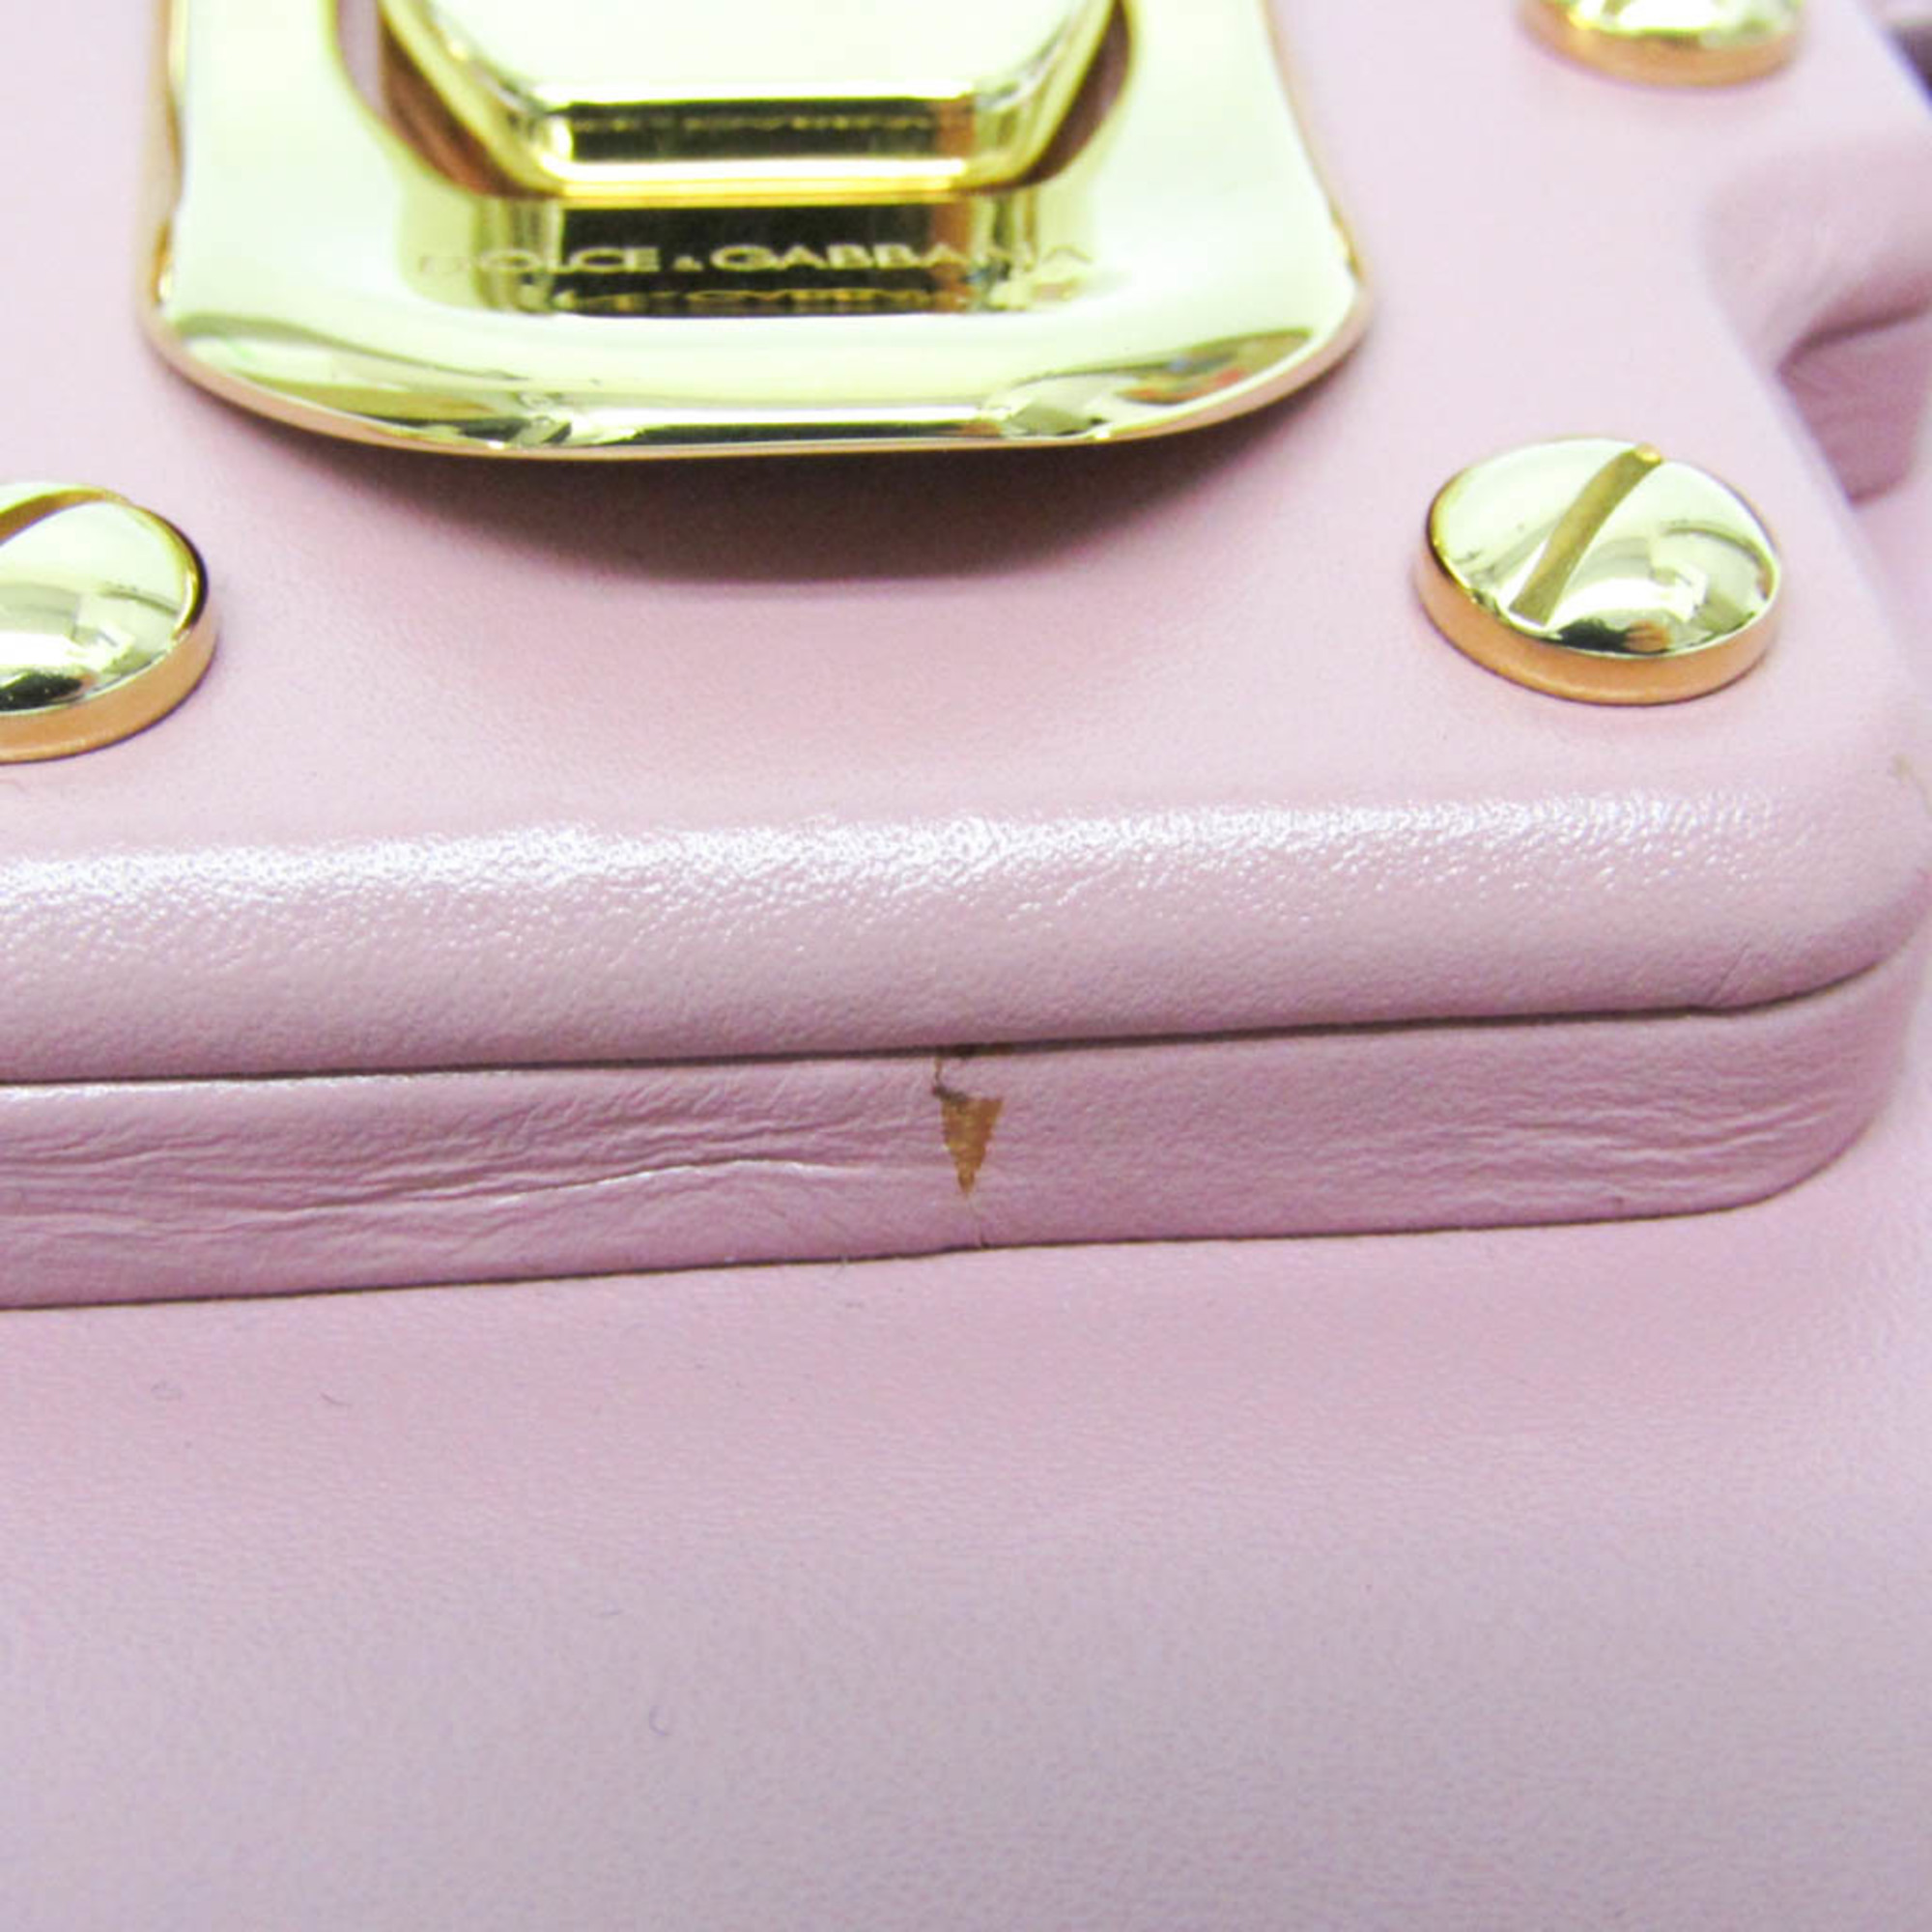 Dolce & Gabbana Women's Leather Shoulder Bag Rose Pink